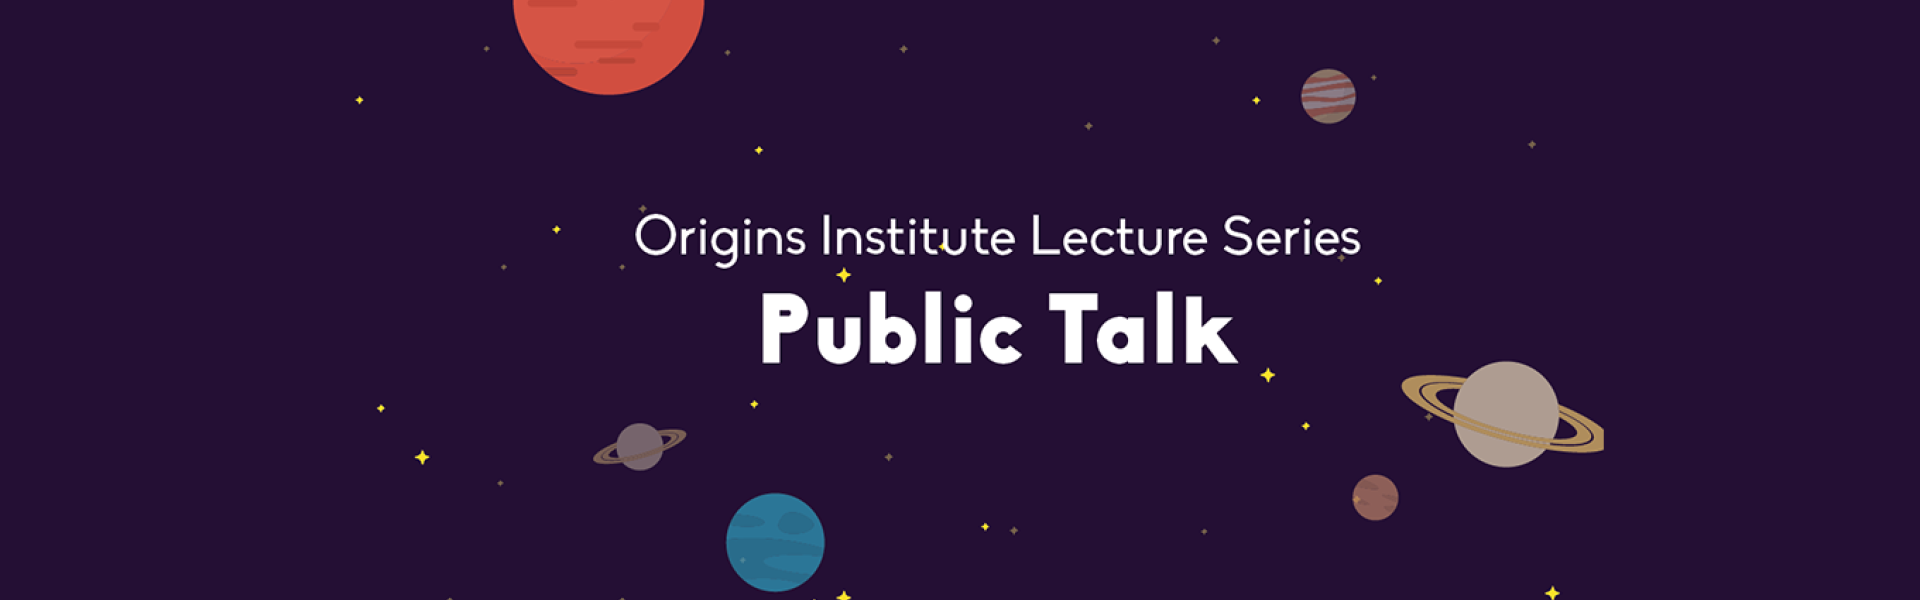 Origins Institute Lecture Series